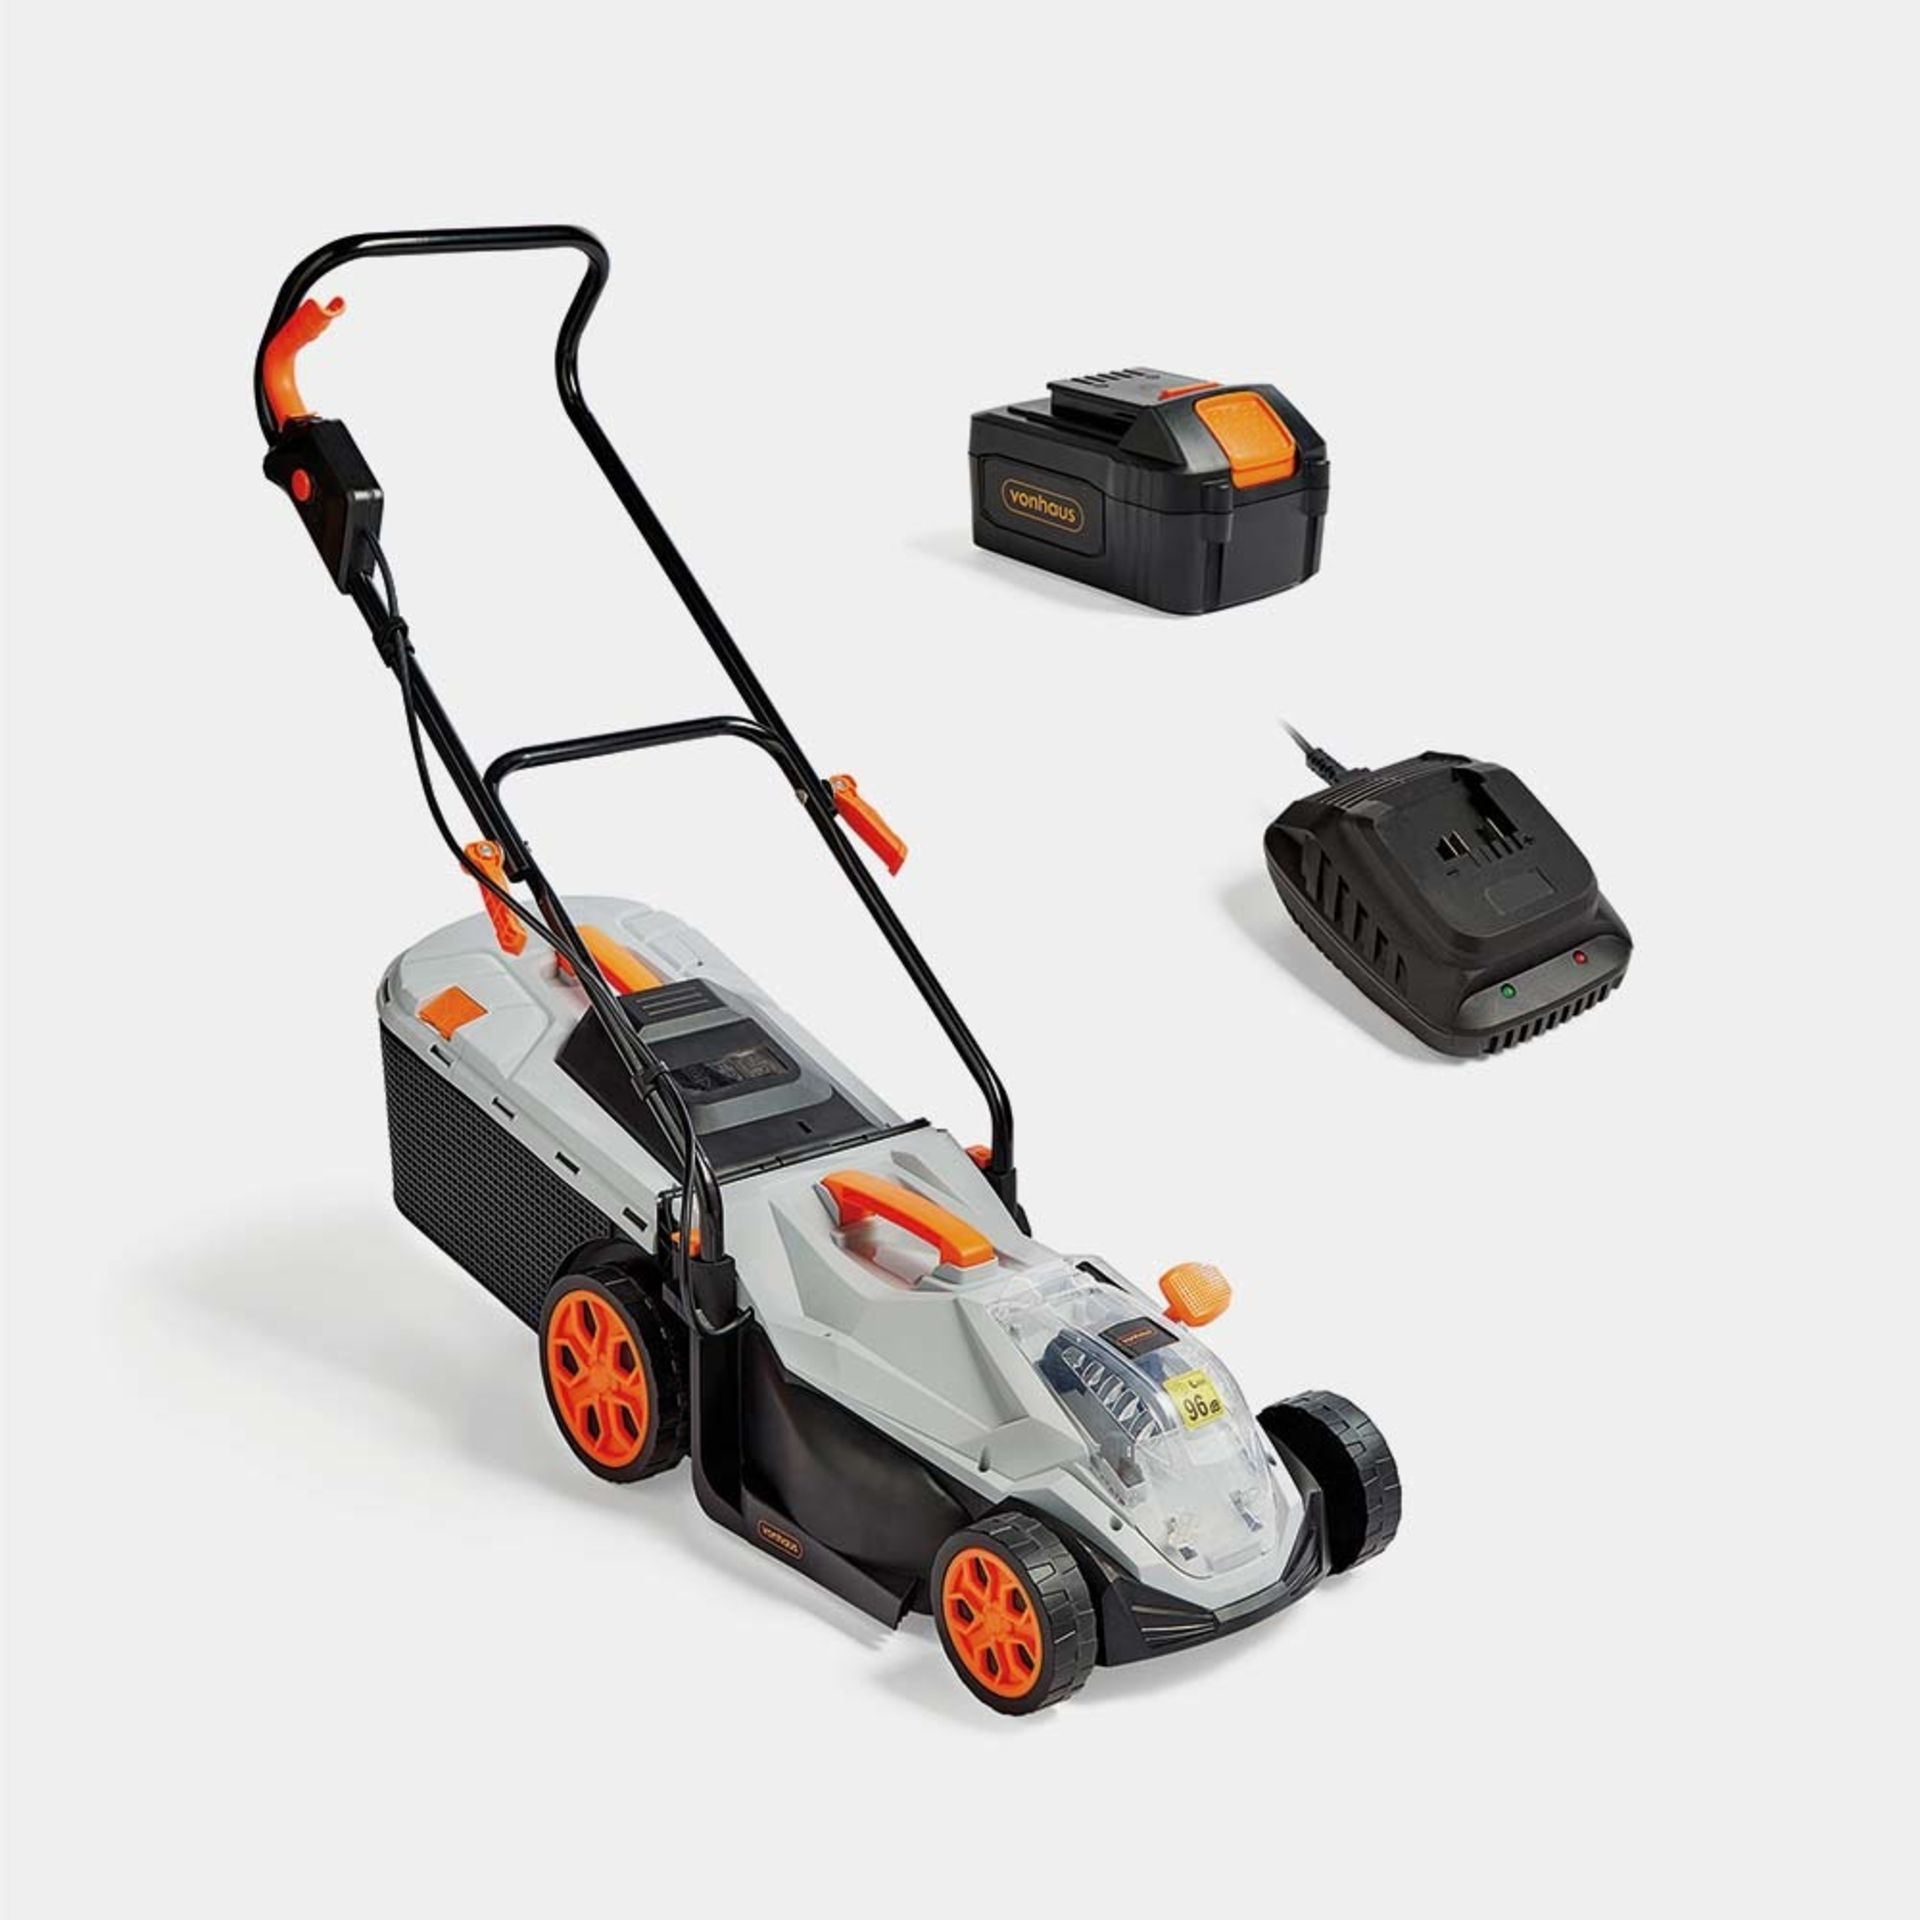 40V Cordless Lawn Mower - DIY - Garden Tools - VonHaus- ER 30